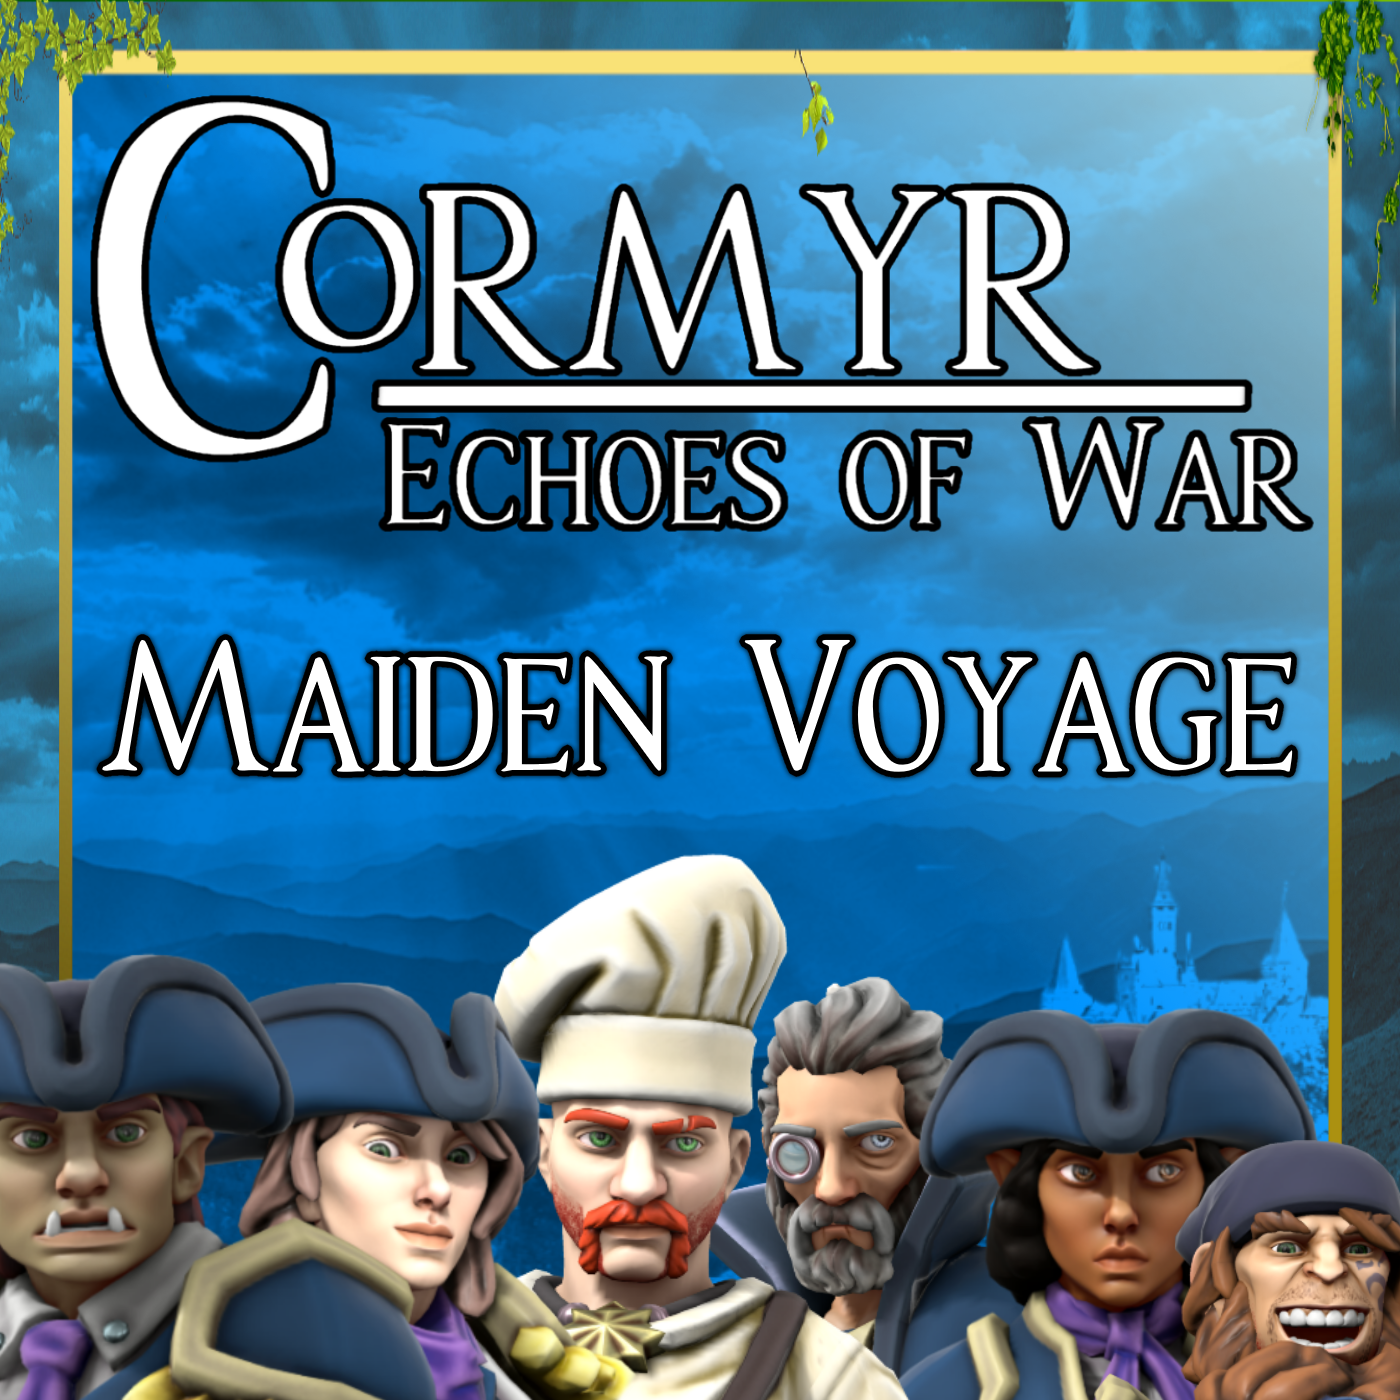 Cormyr: Echoes of War - Maiden Voyage